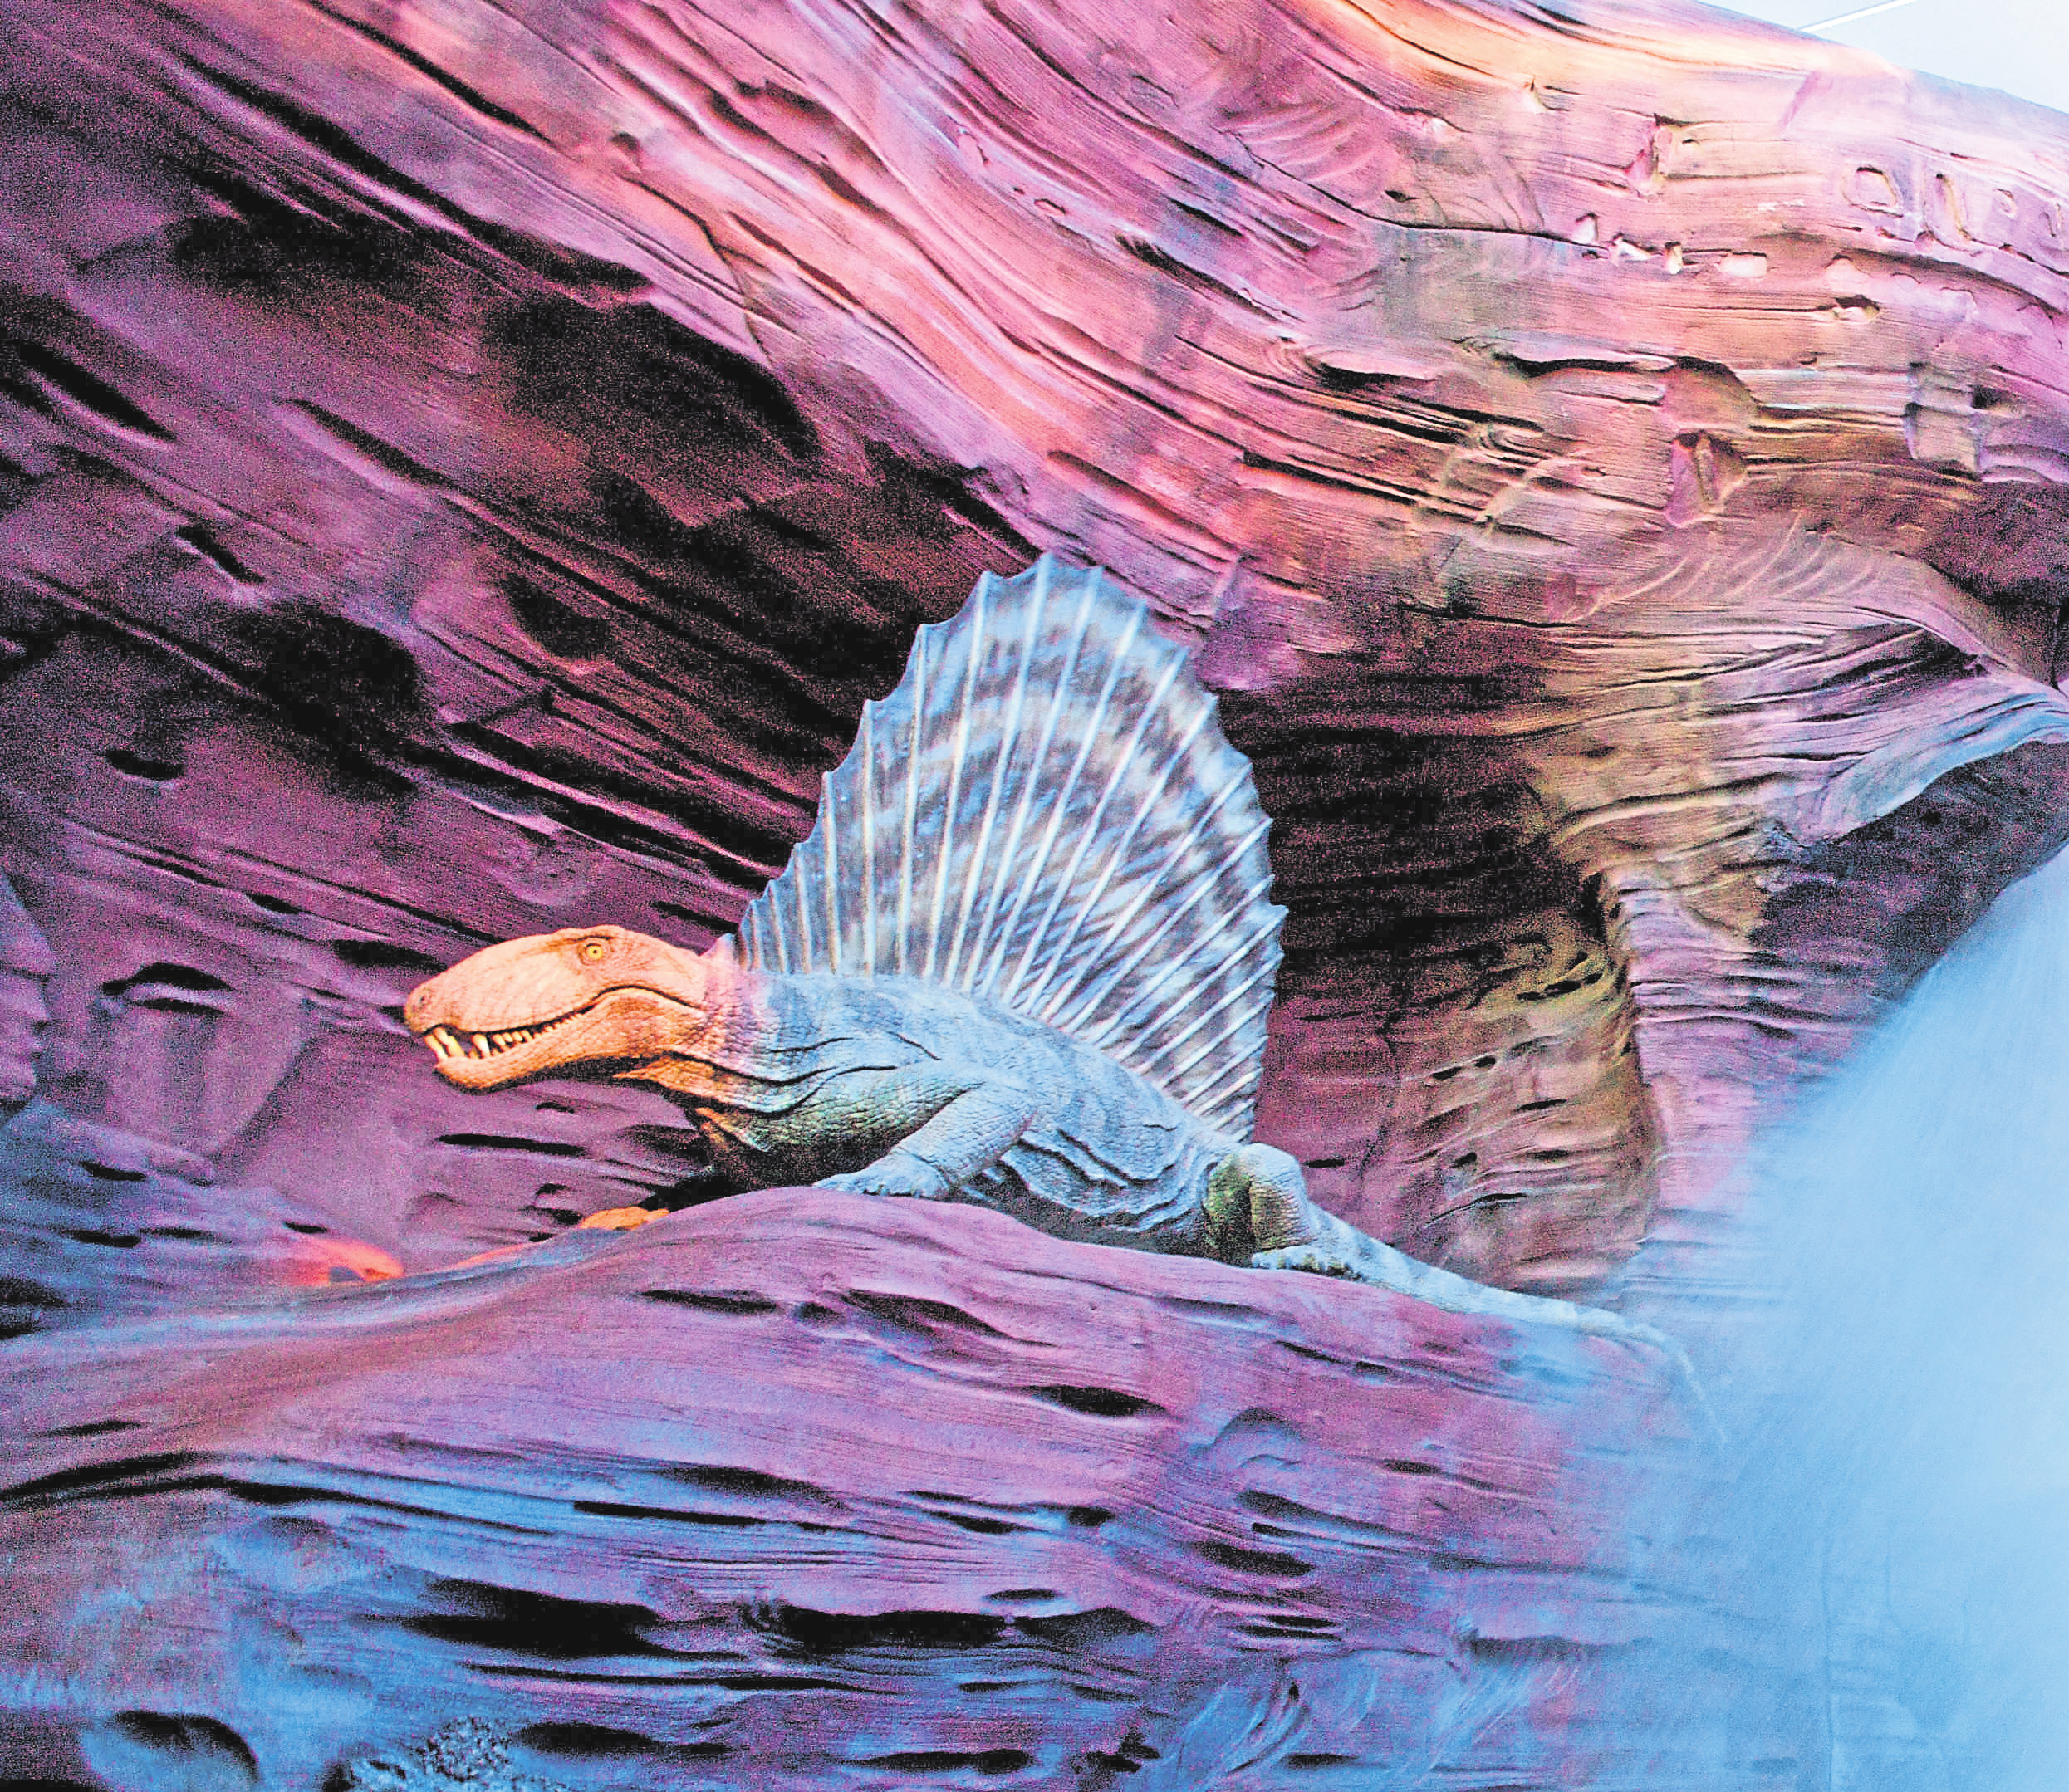 Der Dime trodon, ein fleischfressender Saunier, lebte während des Perms. Er starb vor über 250 Millionen Jahren aus.